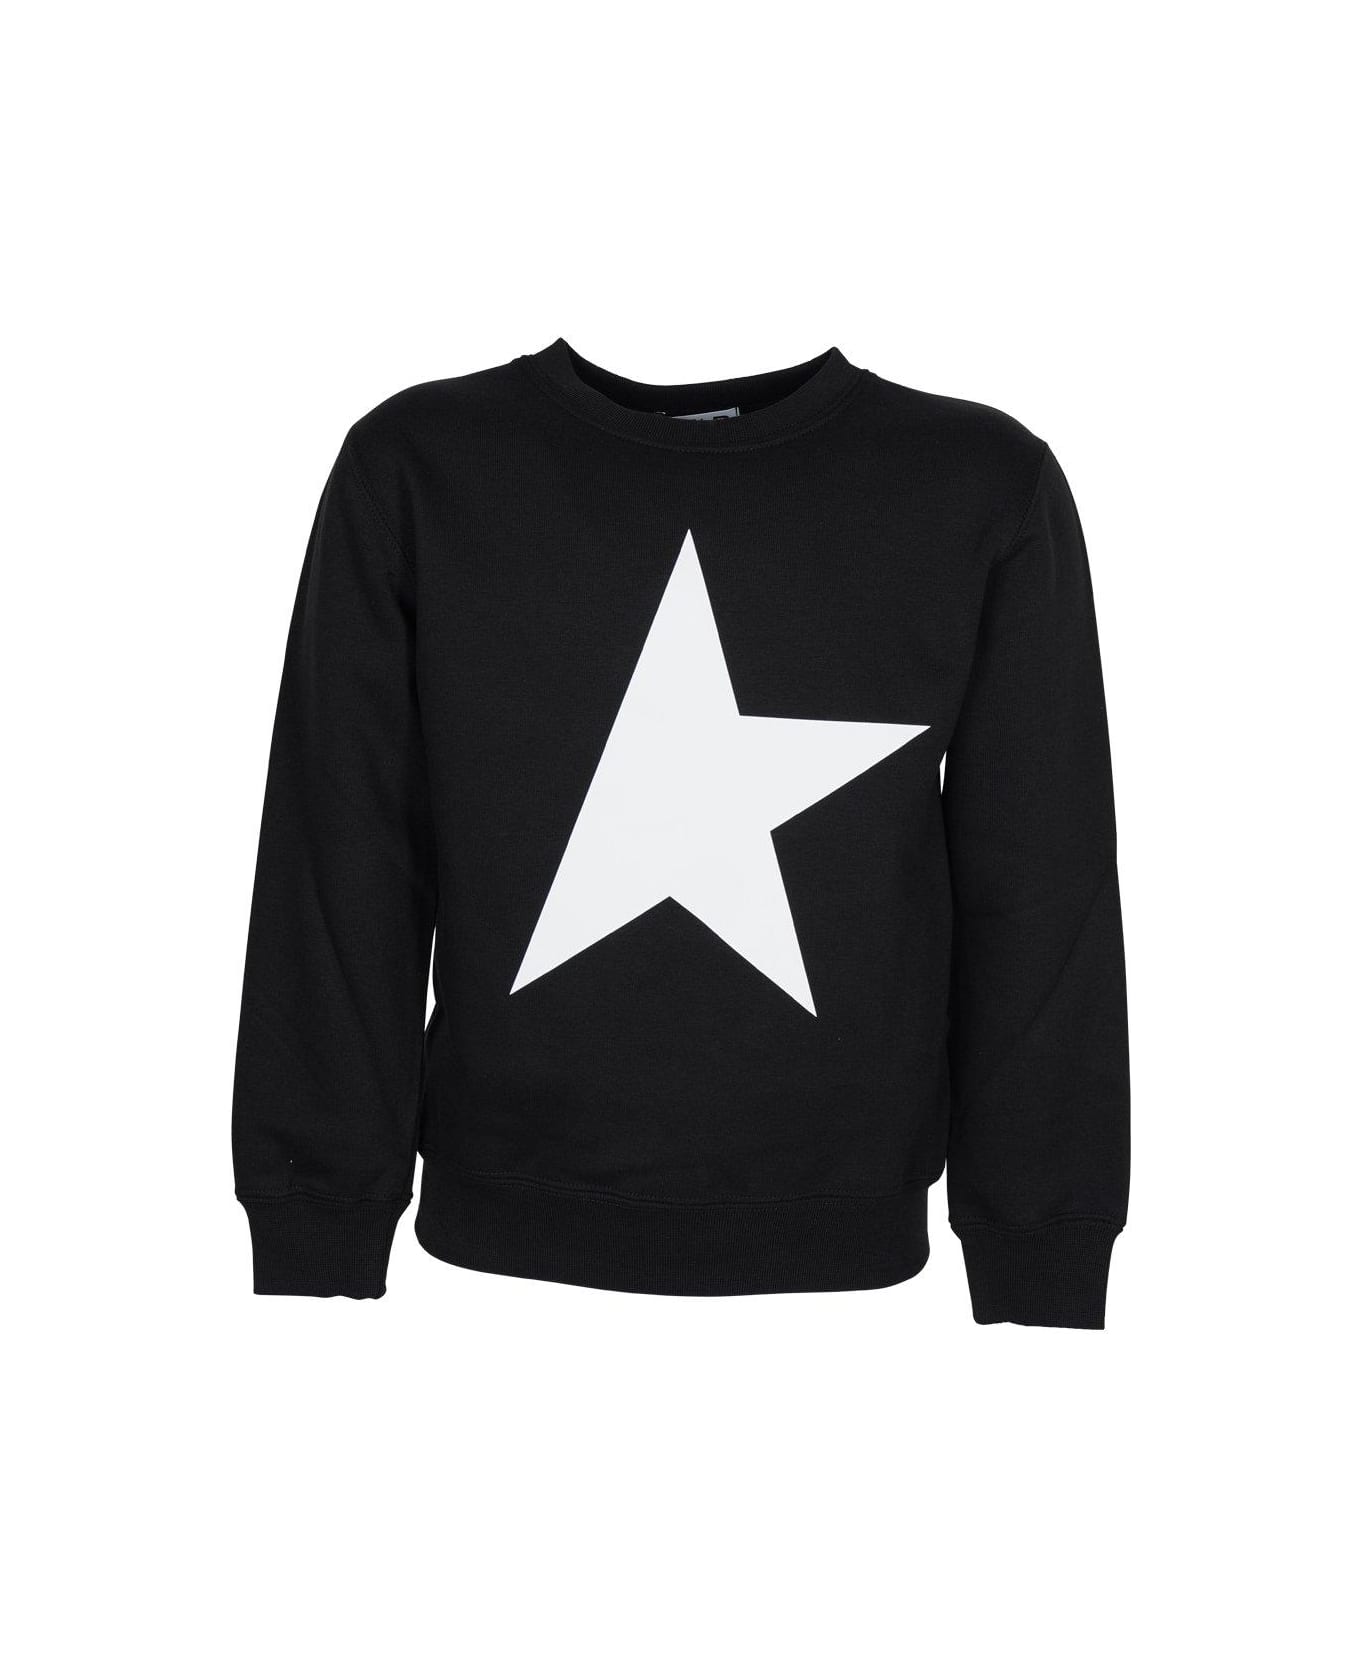 Golden Goose Black Star Collection Long-sleeved Sweatshirt - Black/white ニットウェア＆スウェットシャツ